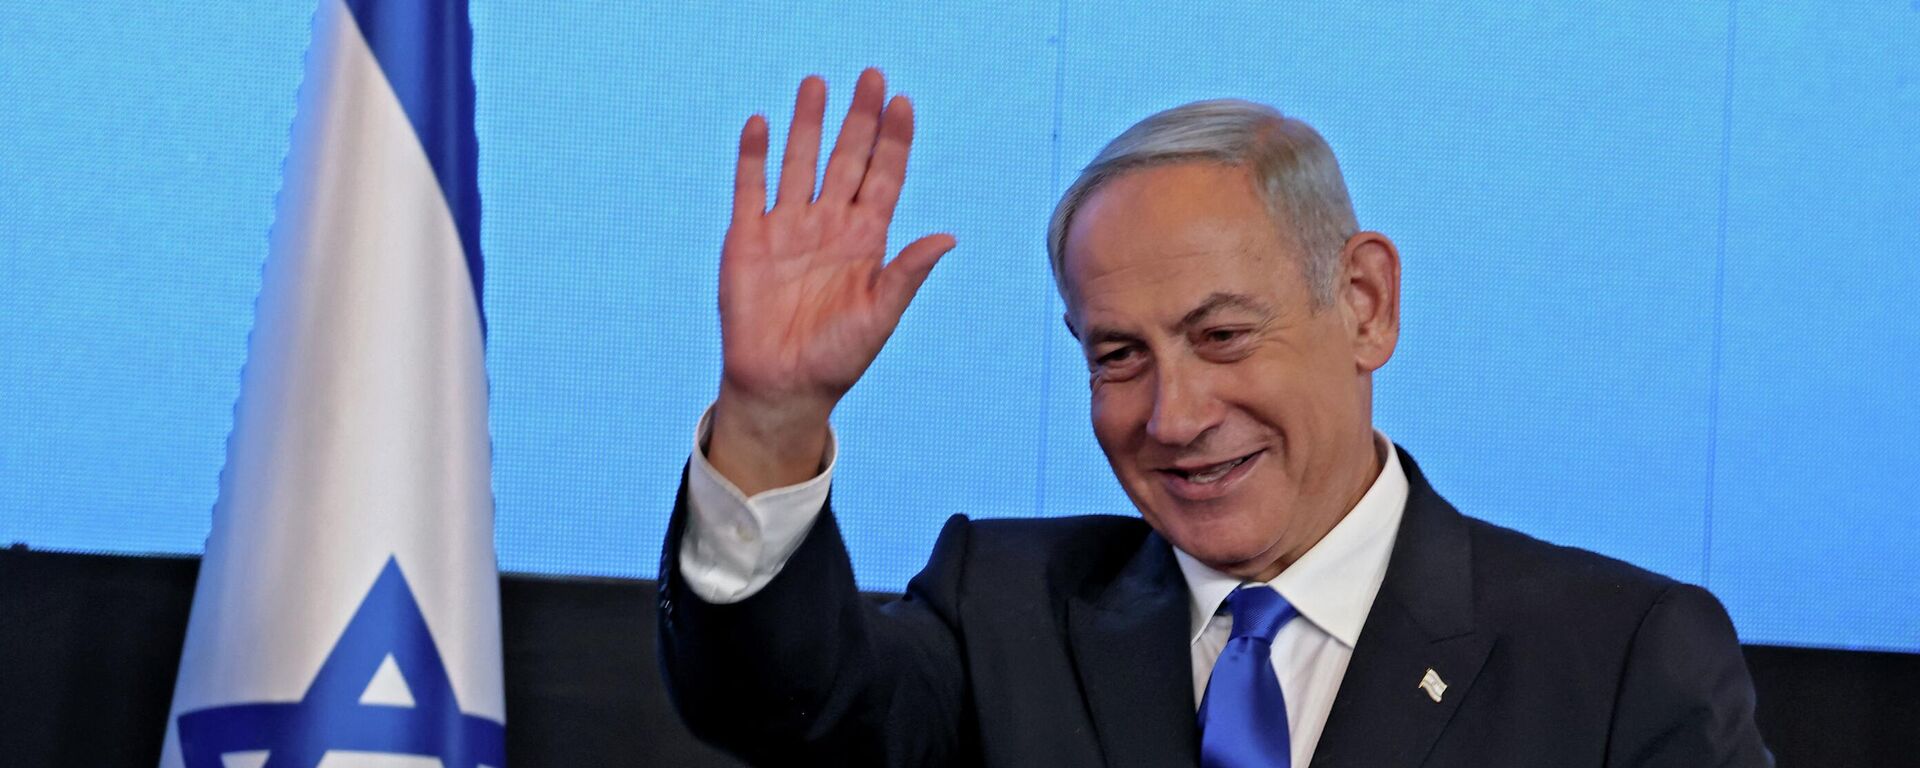 زعيم المعارضة الإسرائيلية بنيامين نتنياهو بعد فوزه في الانتخابات العامة في إسرائيل، نوفمبر/ تشرين الثاني 2022. - سبوتنيك عربي, 1920, 25.12.2022